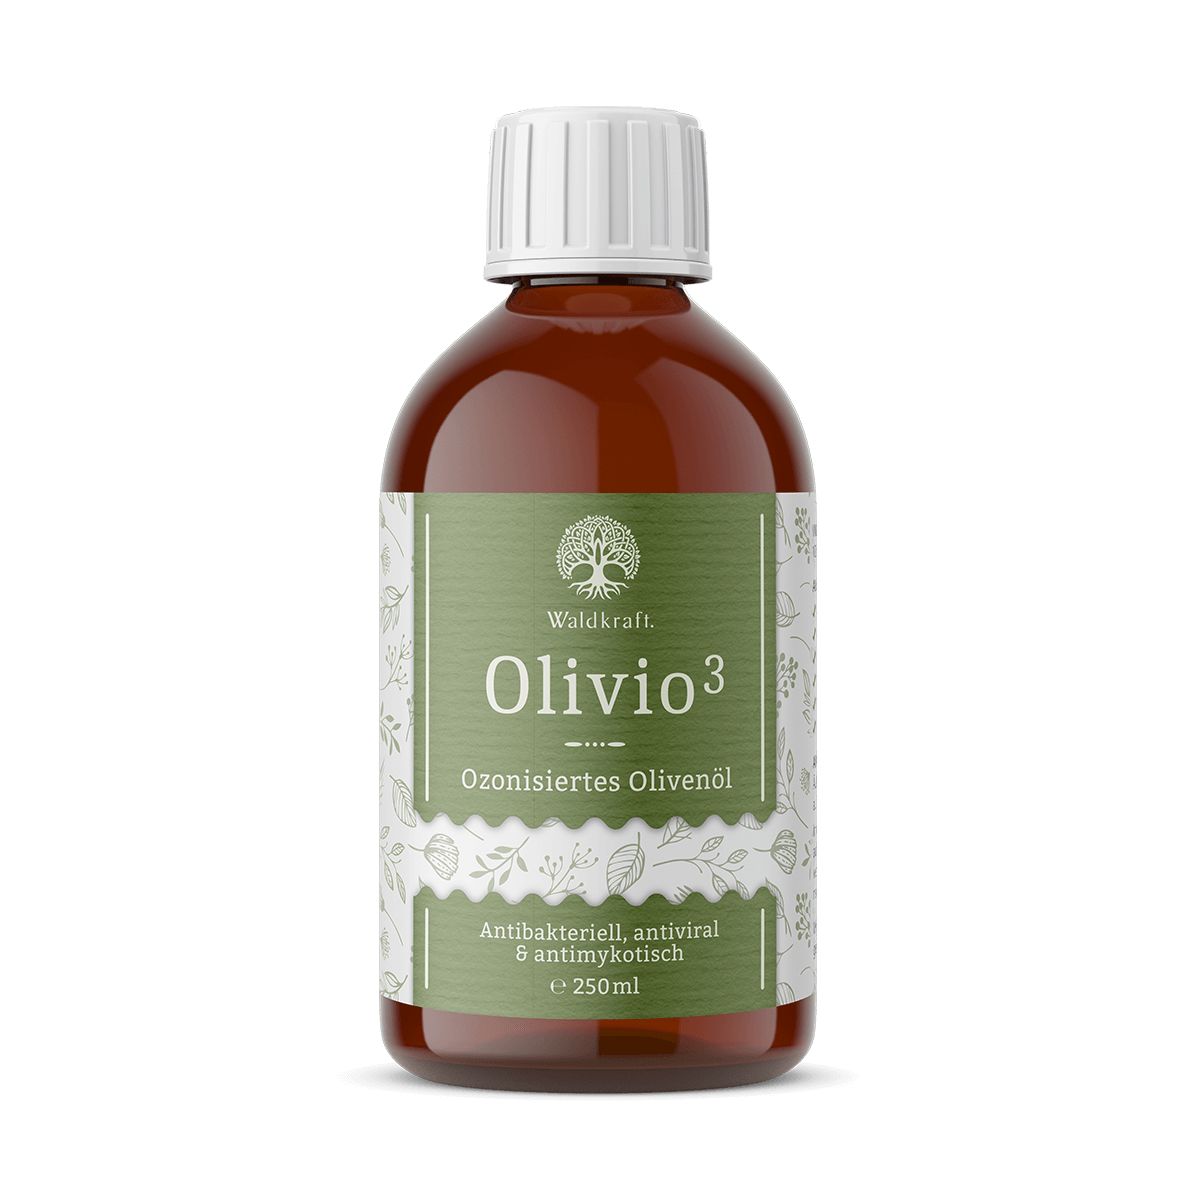 Waldkraft Olivio3 – Ozonisiertes Olivenöl